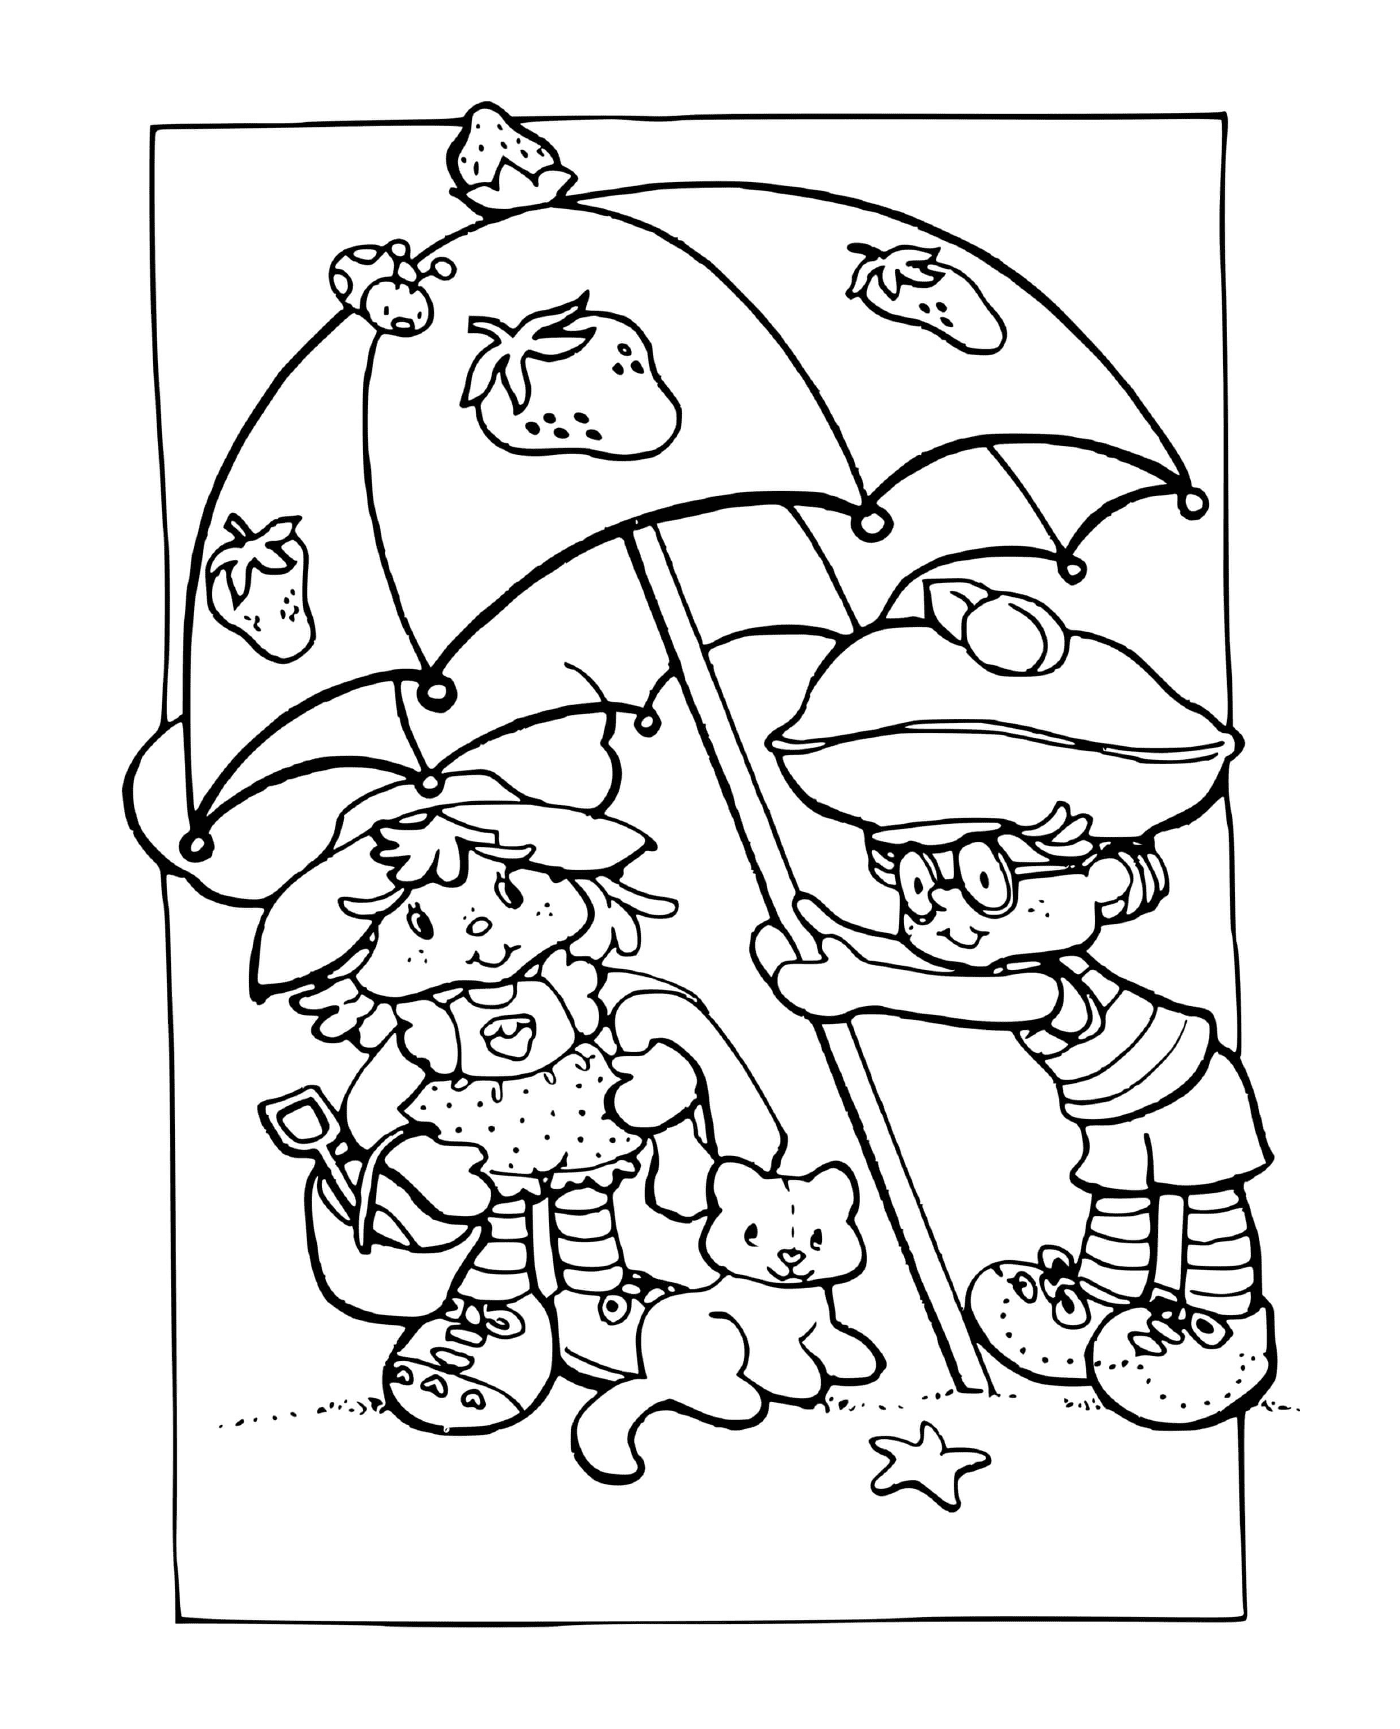  Charlotte mit Erdbeeren unter einem Sonnenschirm ruhen 